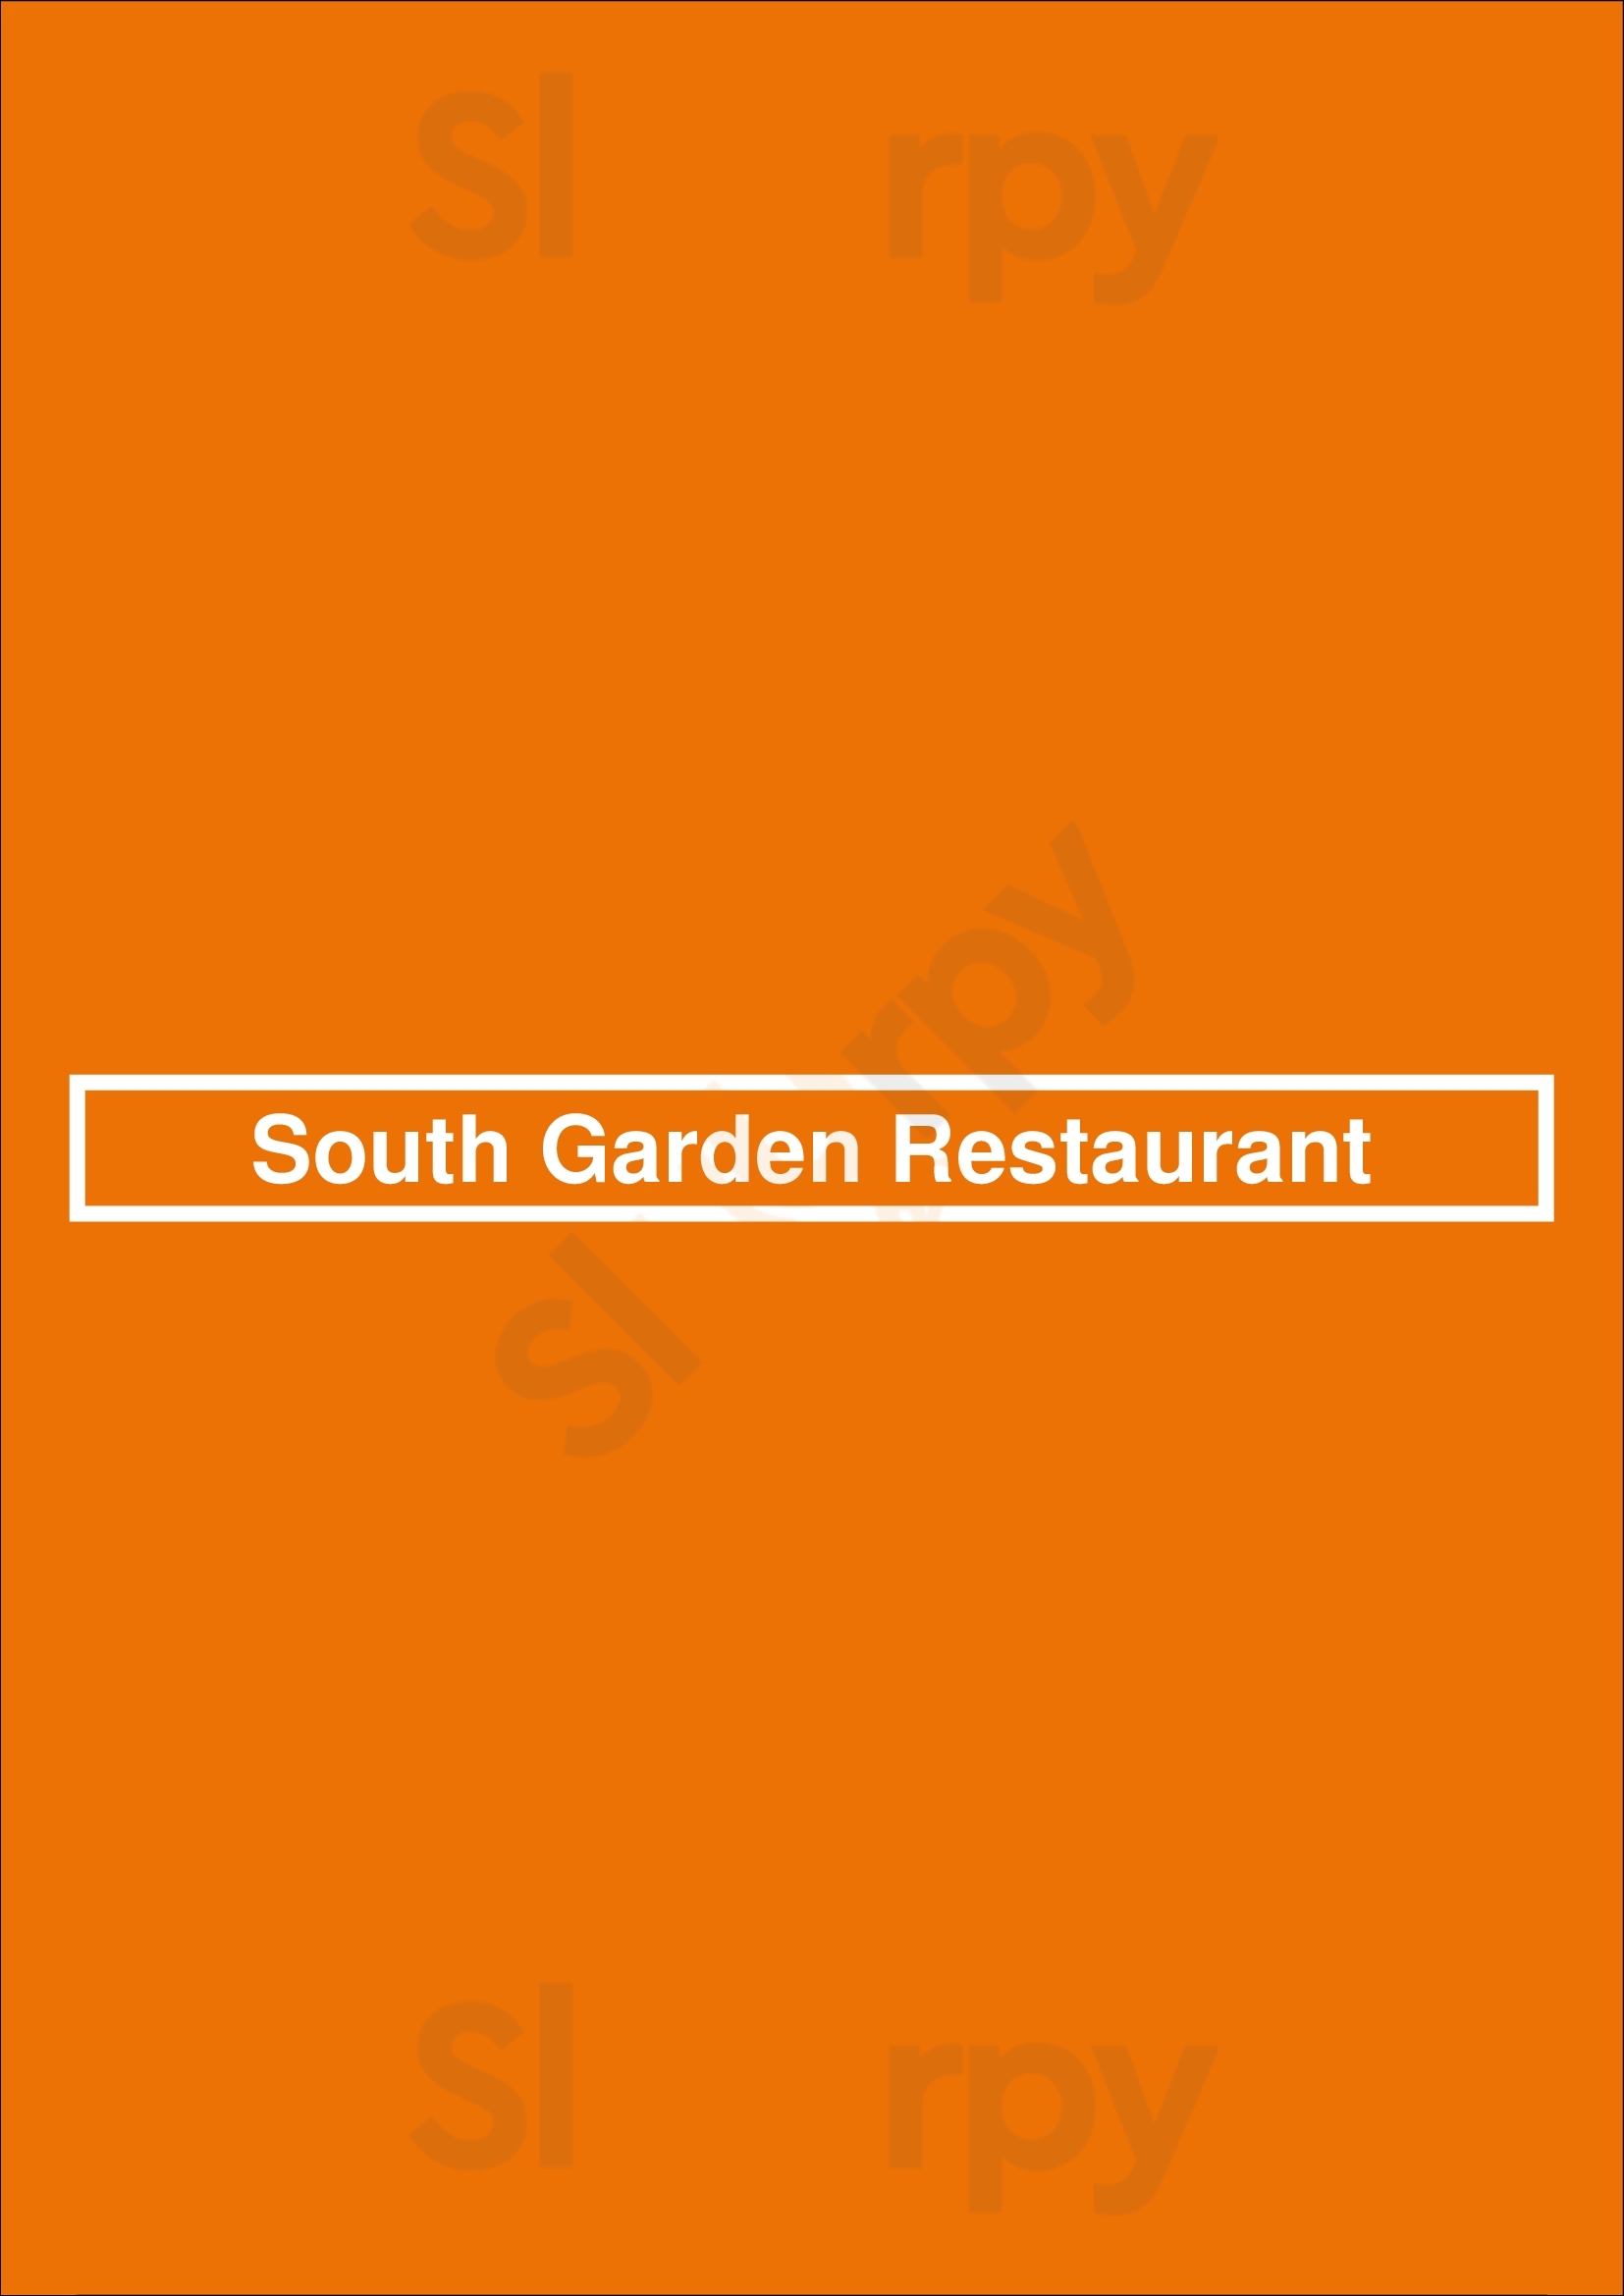 South Garden Restaurant Denver Menu - 1